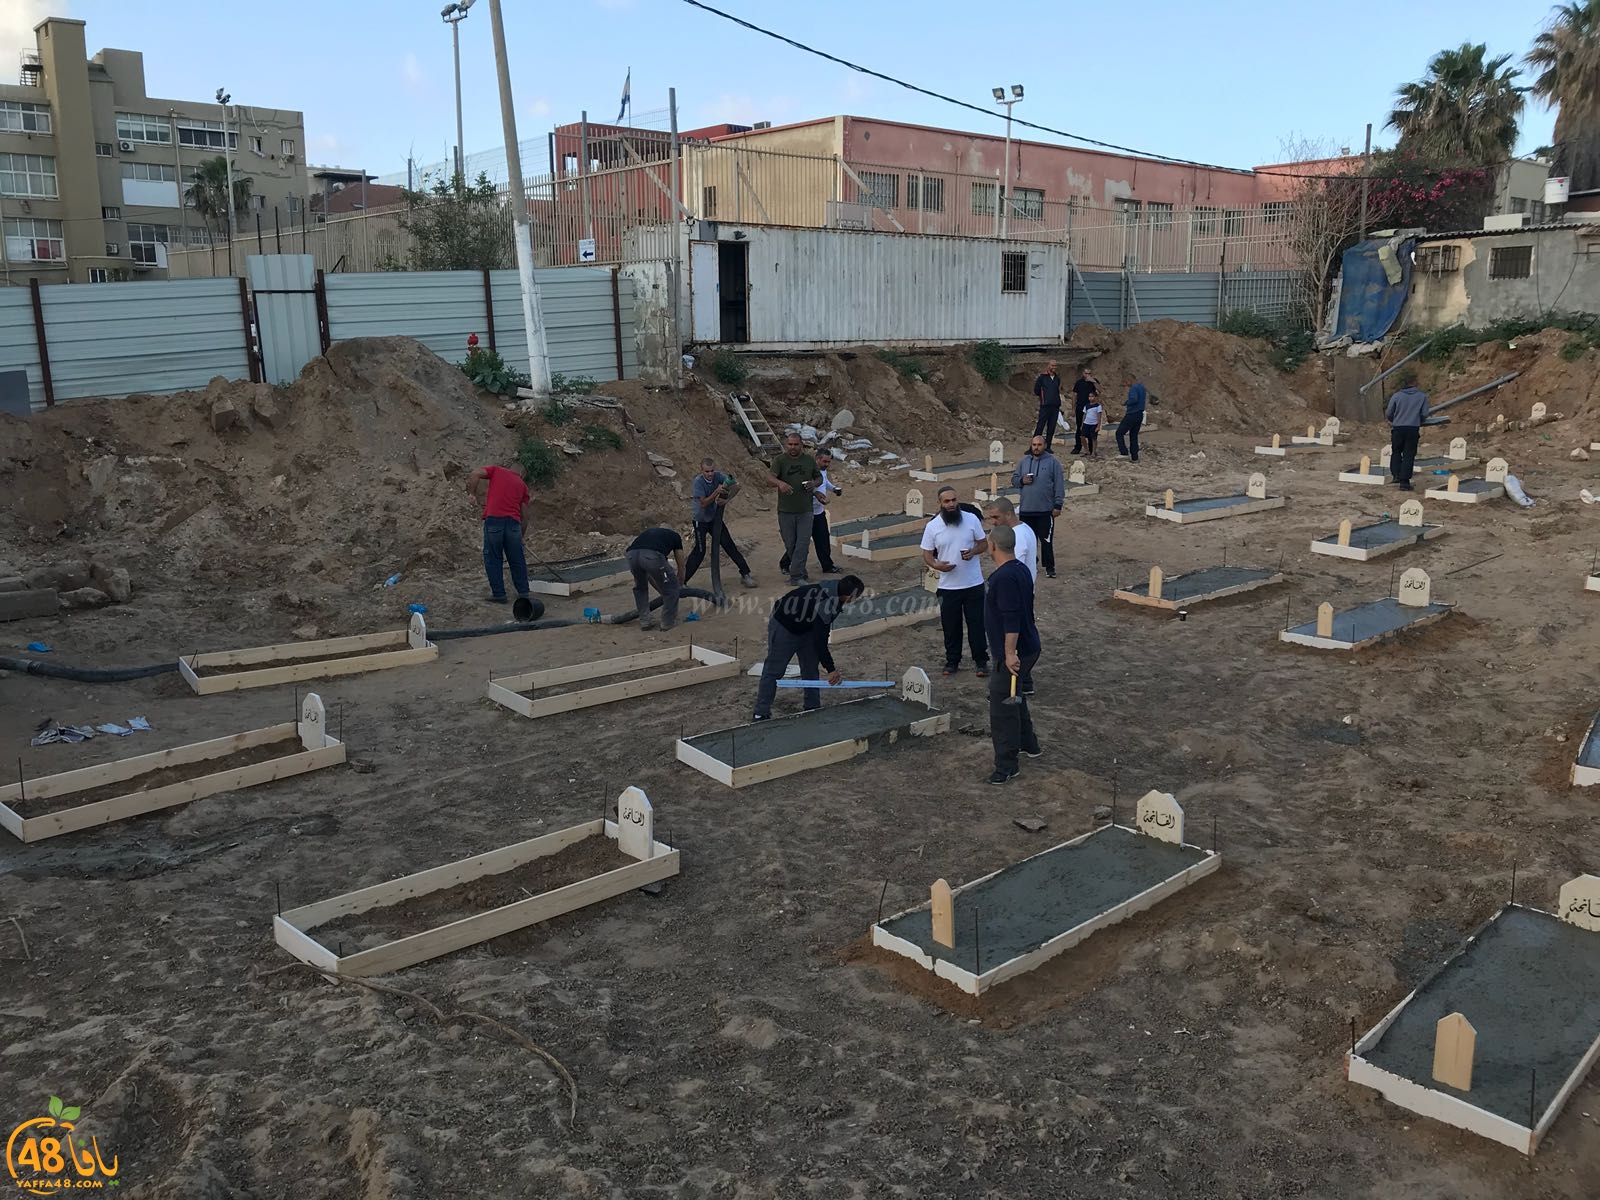 فيديو: لجنة إكرام الميت بيافا تعيد بناء القبور في مقبرة الاسعاف وتضع فوقها الشواهد